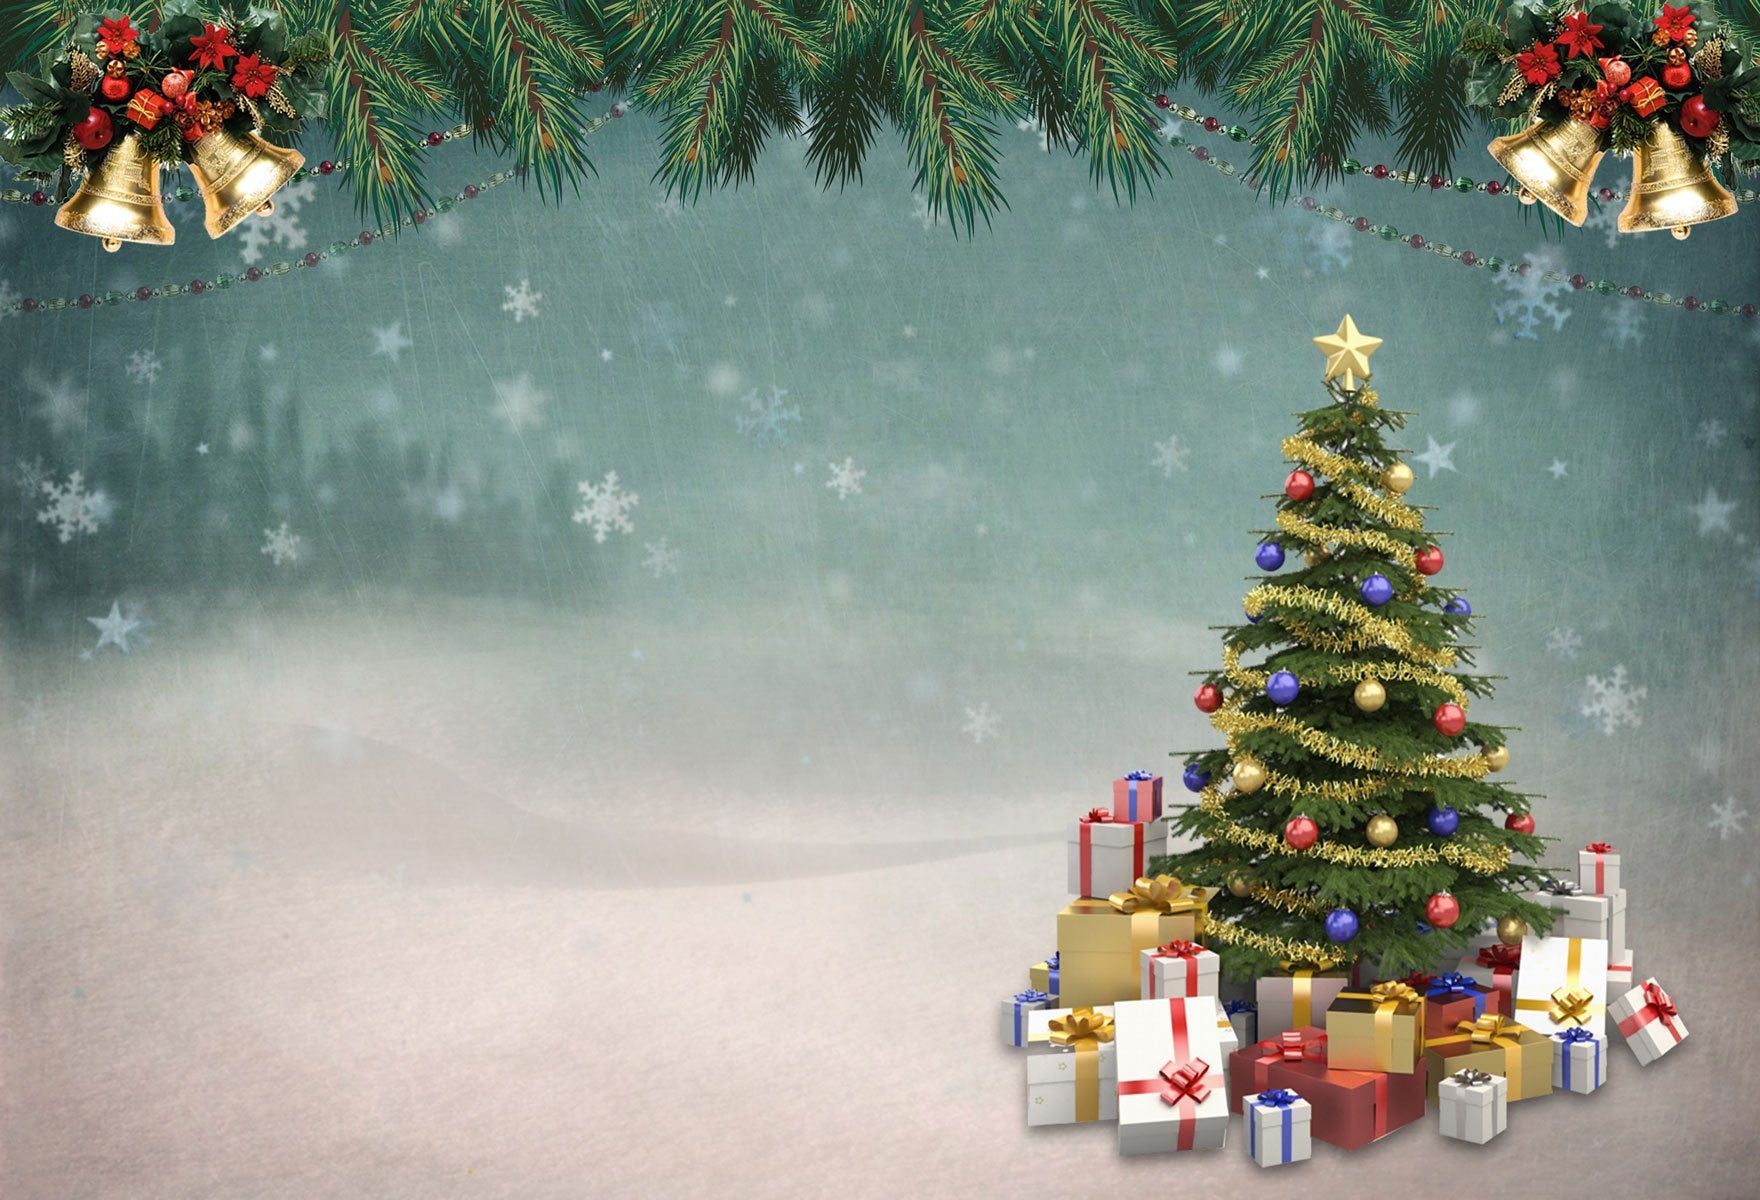 Kate Winter-Weihnachtsbaum mit Schneeflocken-Hintergrund Entworfen von JFCC